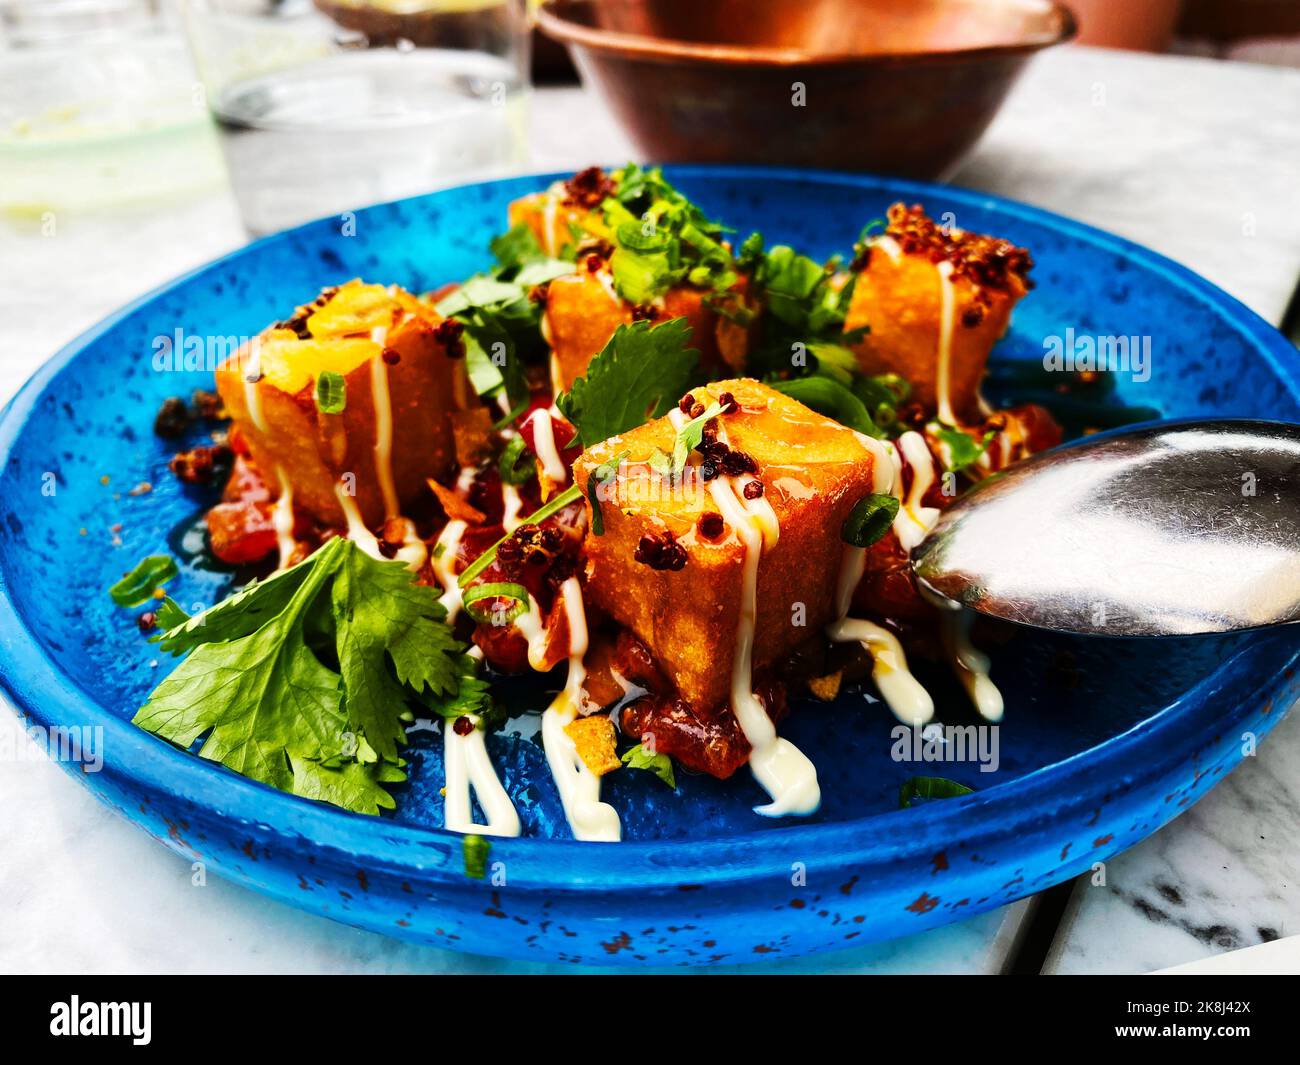 Une salade de tofu. Salade de tofu avec légumes verts sur une assiette bleue dans un restaurant chic situé sur le toit. Banque D'Images